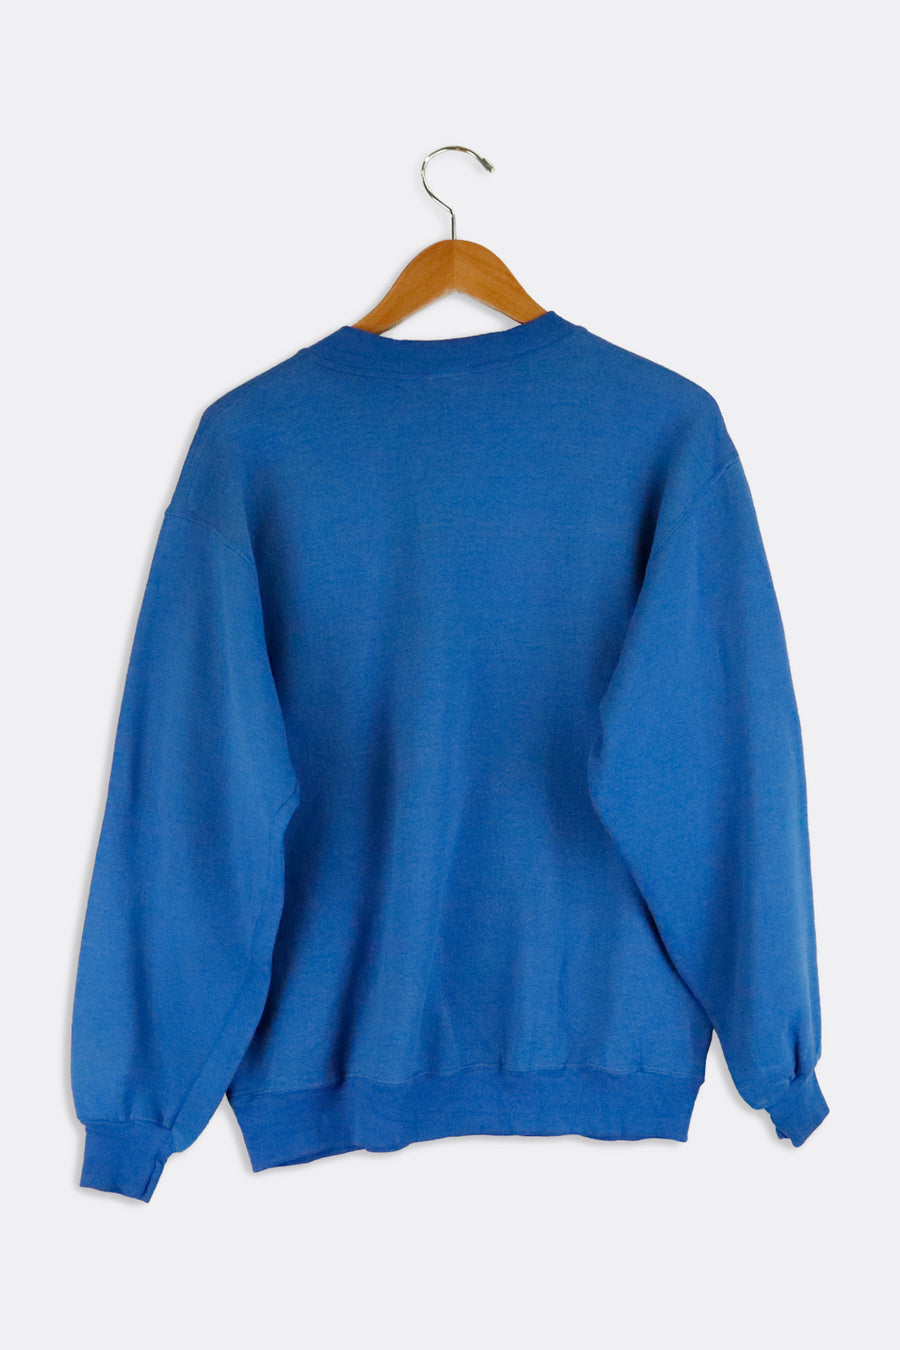 Vintage Notre Dame Plaid Design Sweatshirt Sz XL